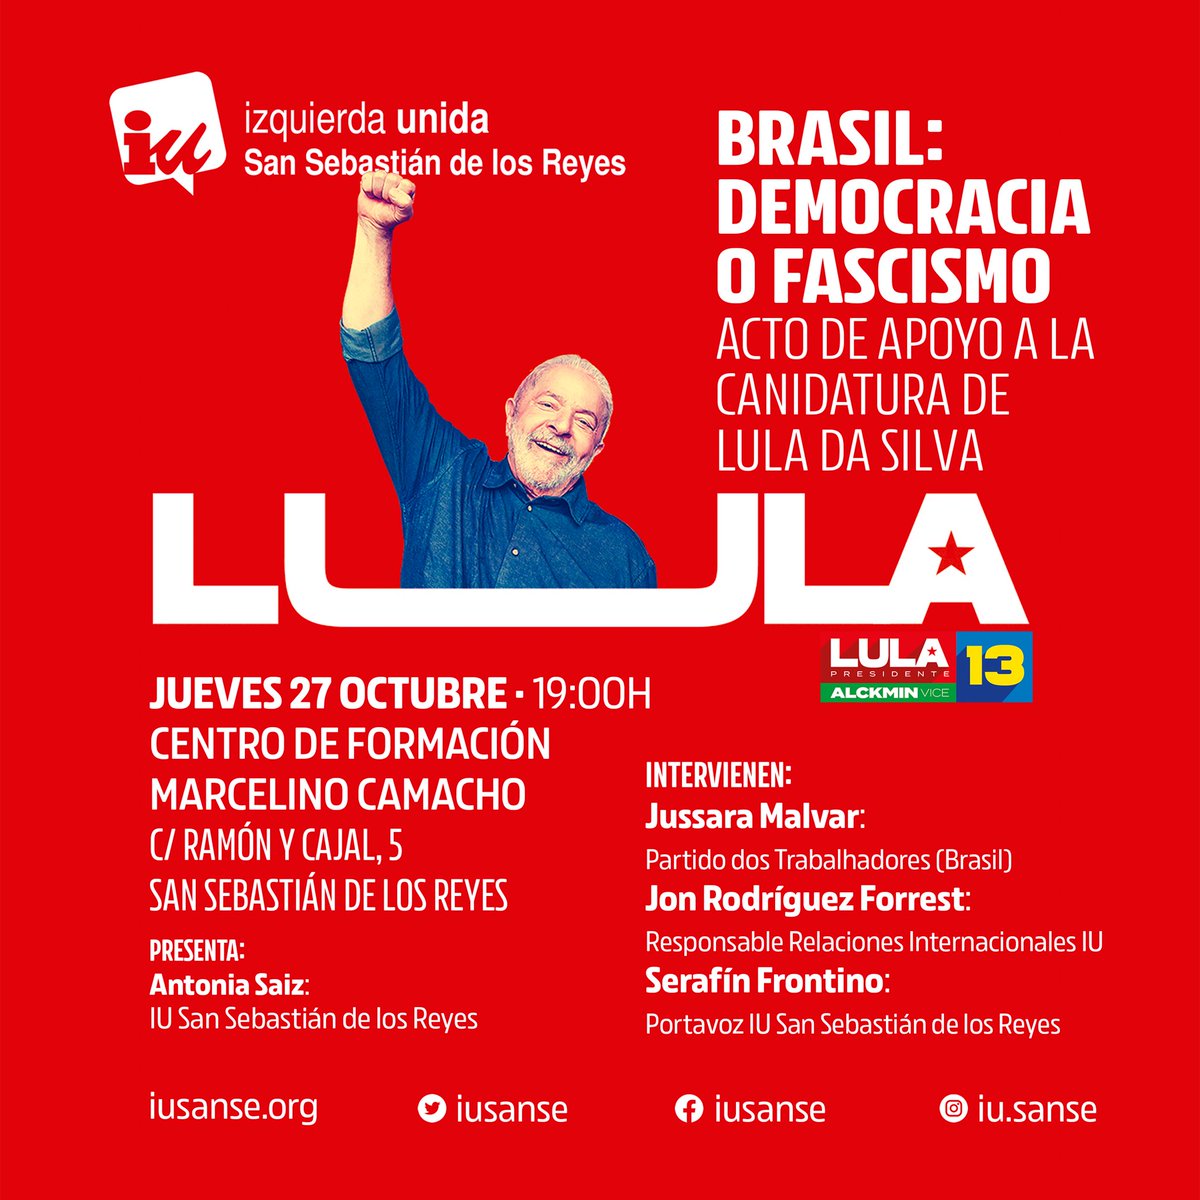 Las elecciones en Brasil el contraponen dos modelos opuestos. El proyecto de #BrasilDaEsperança que representa Lula marca el camino de justicia social y climática que necesita América Latina. El jueves estaré con las compañeras de @iusanse hablando sobre todo lo que nos jugamos.